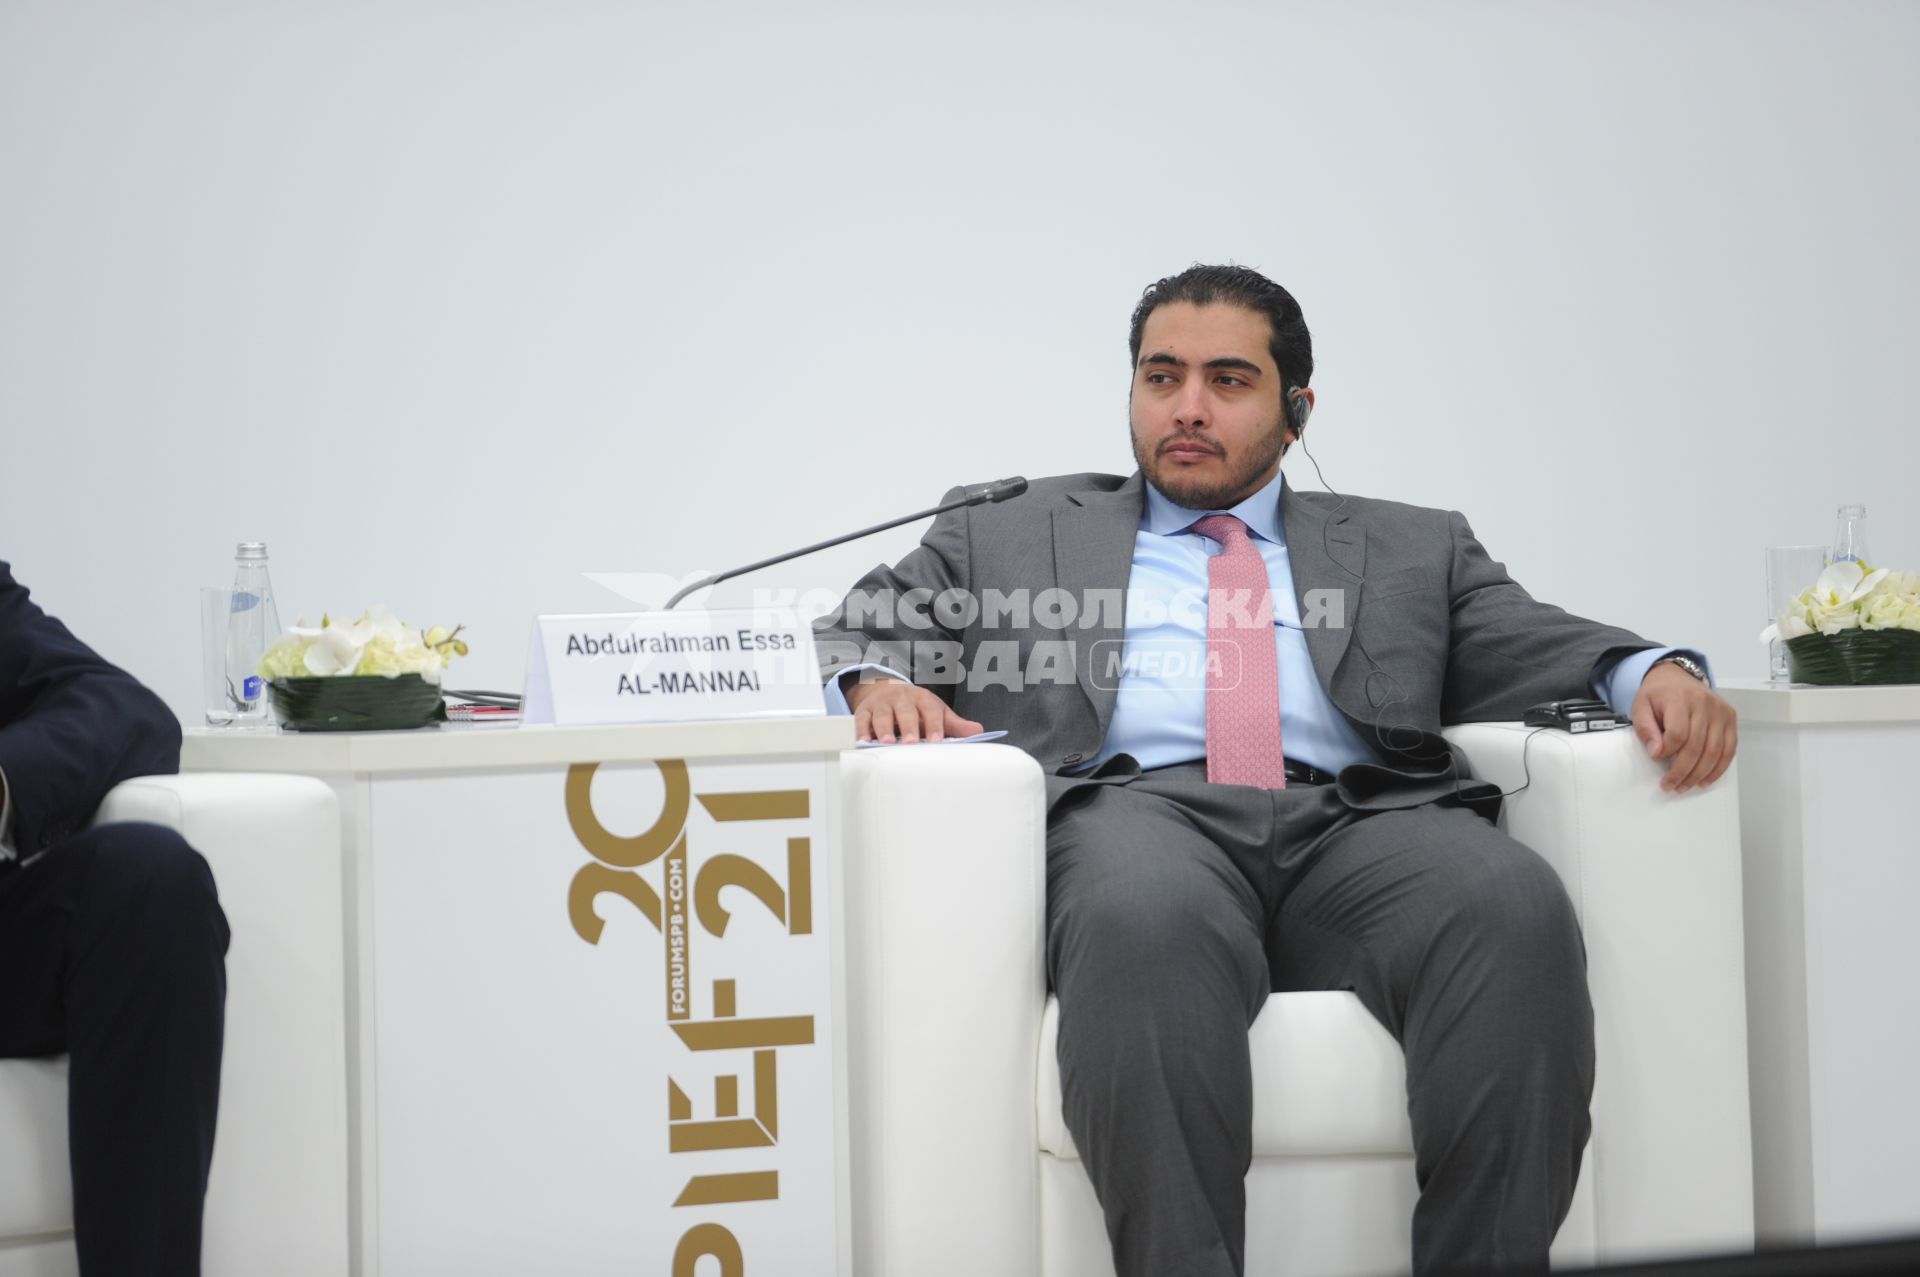 Санкт-Петербург. Президент, главный исполнительный директор Qatar Navigation Q.P.S.C. Абдулрахман Эсса Аль-Маннаи во время сессии `Транспортный каркас экономики` в рамках XXIV Петербургского международного экономического форума.